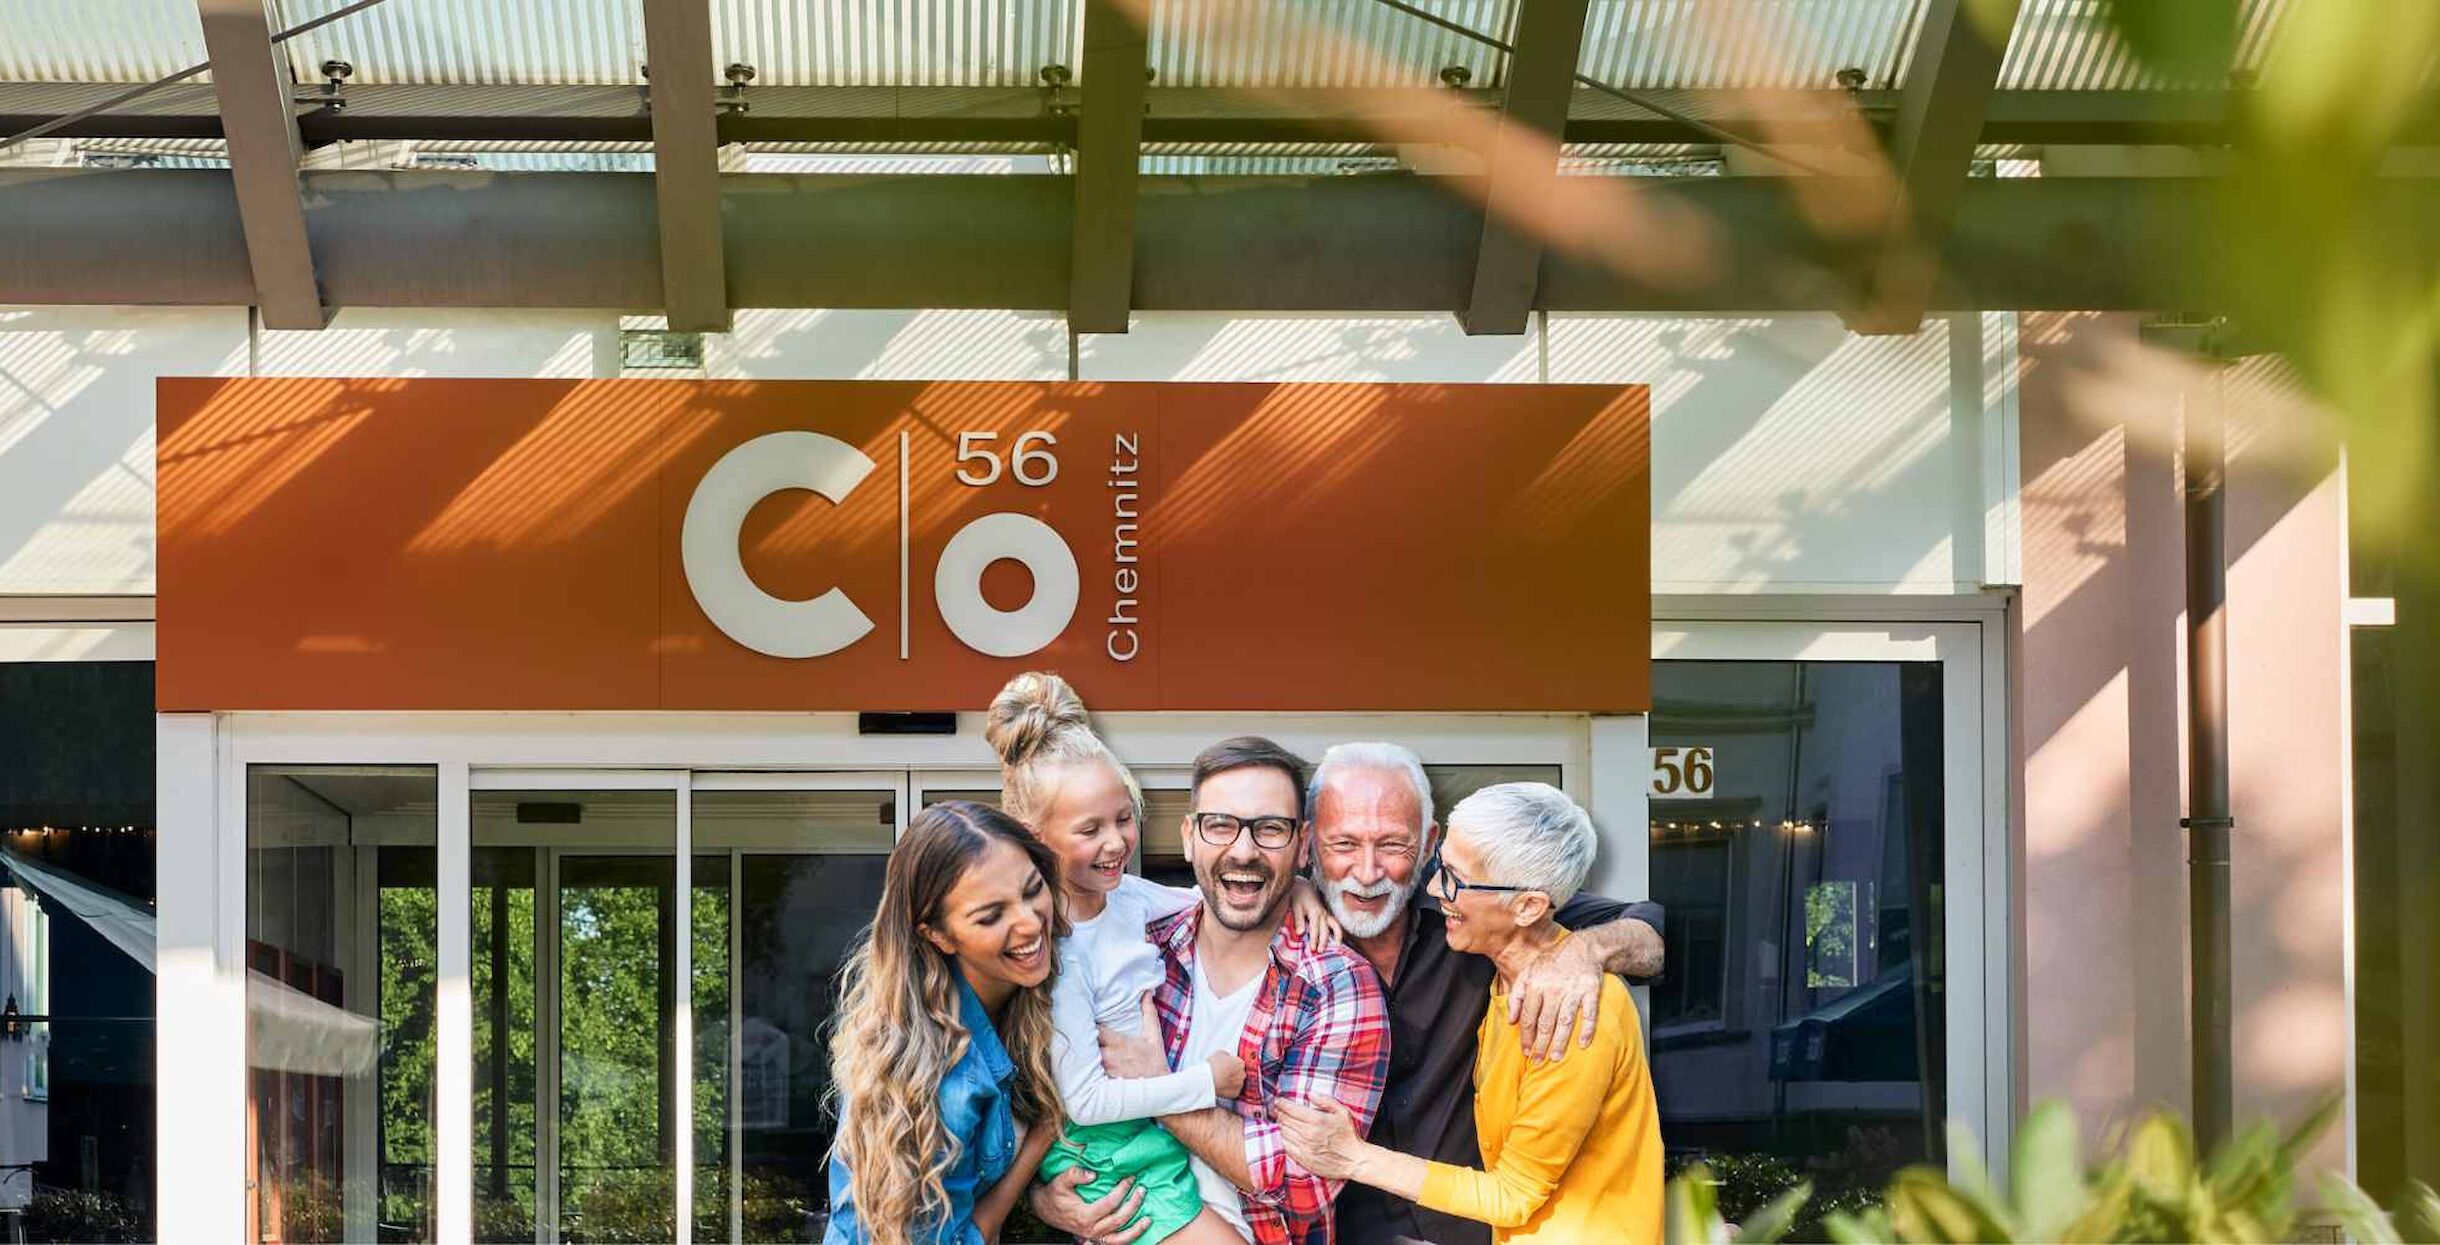 Lachende Familie mit Großeltern vor dem Eingang zum Hotel c/o56